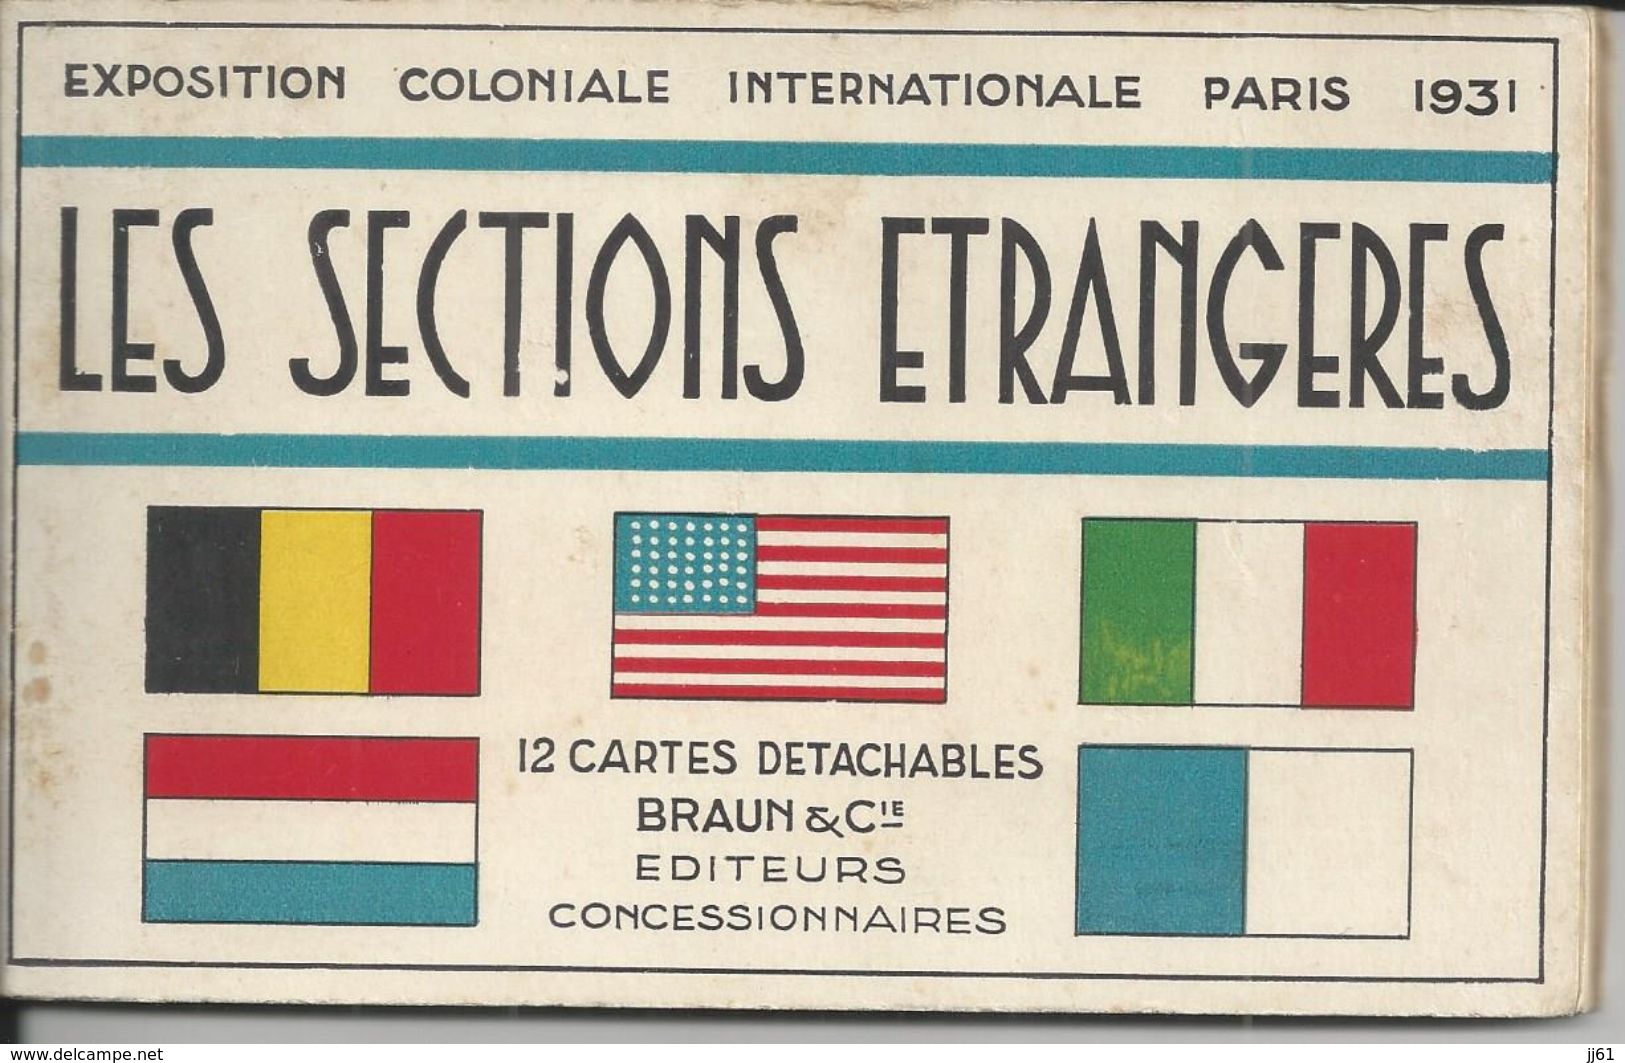 PARIS EXPOSITION COLONIALE INTERNATIONALE 1931 LES SECTIONS ETRANGERES ALBUM DE 12 CARTES POSTALES COMPLET 1 DE DETACHER - Expositions